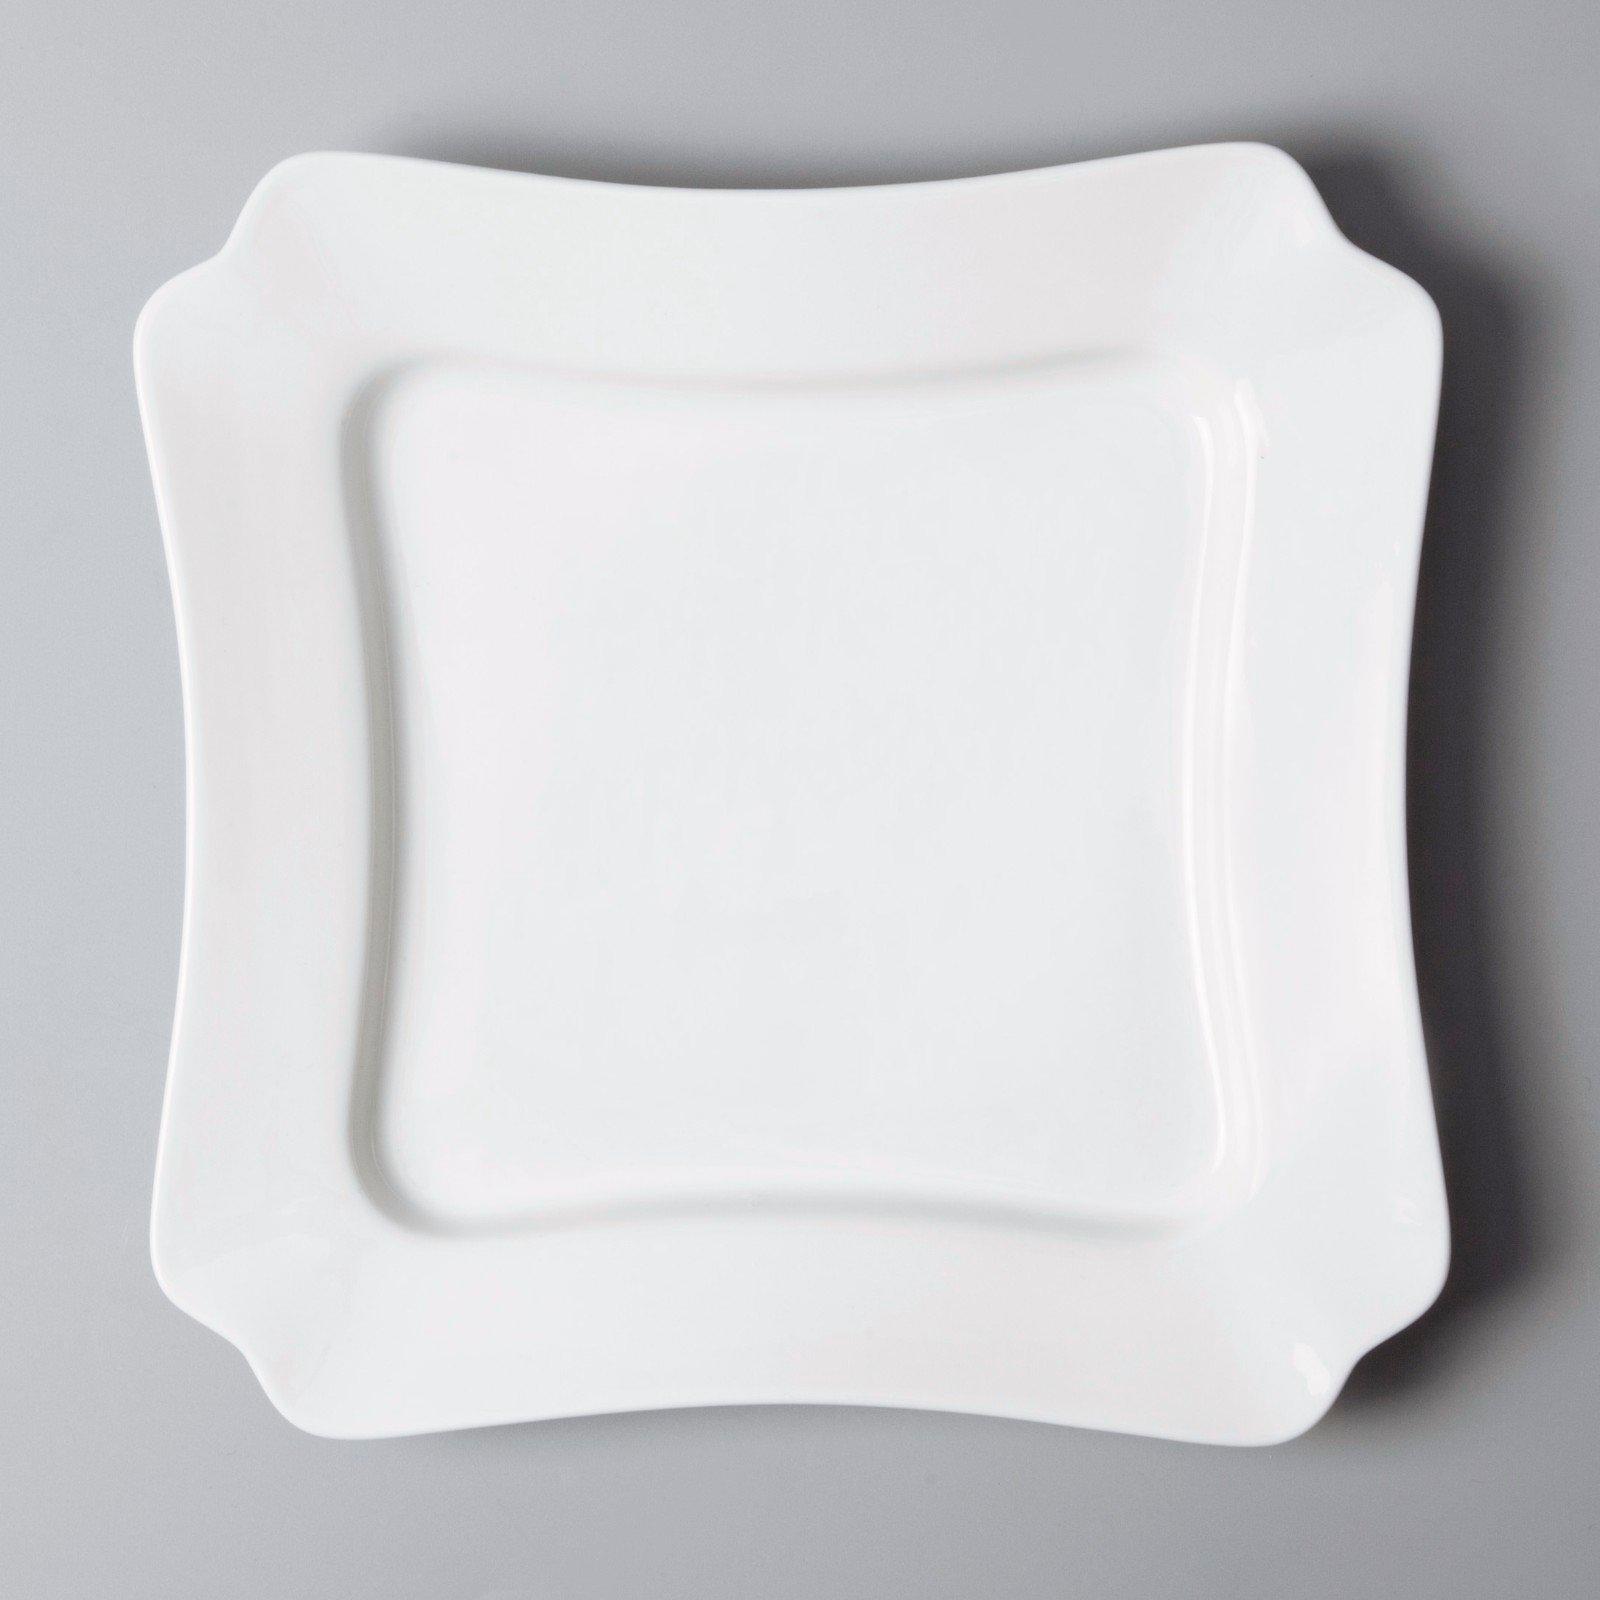 Two Eight irregular restaurant porcelain dinnerware directly sale for dinner-2